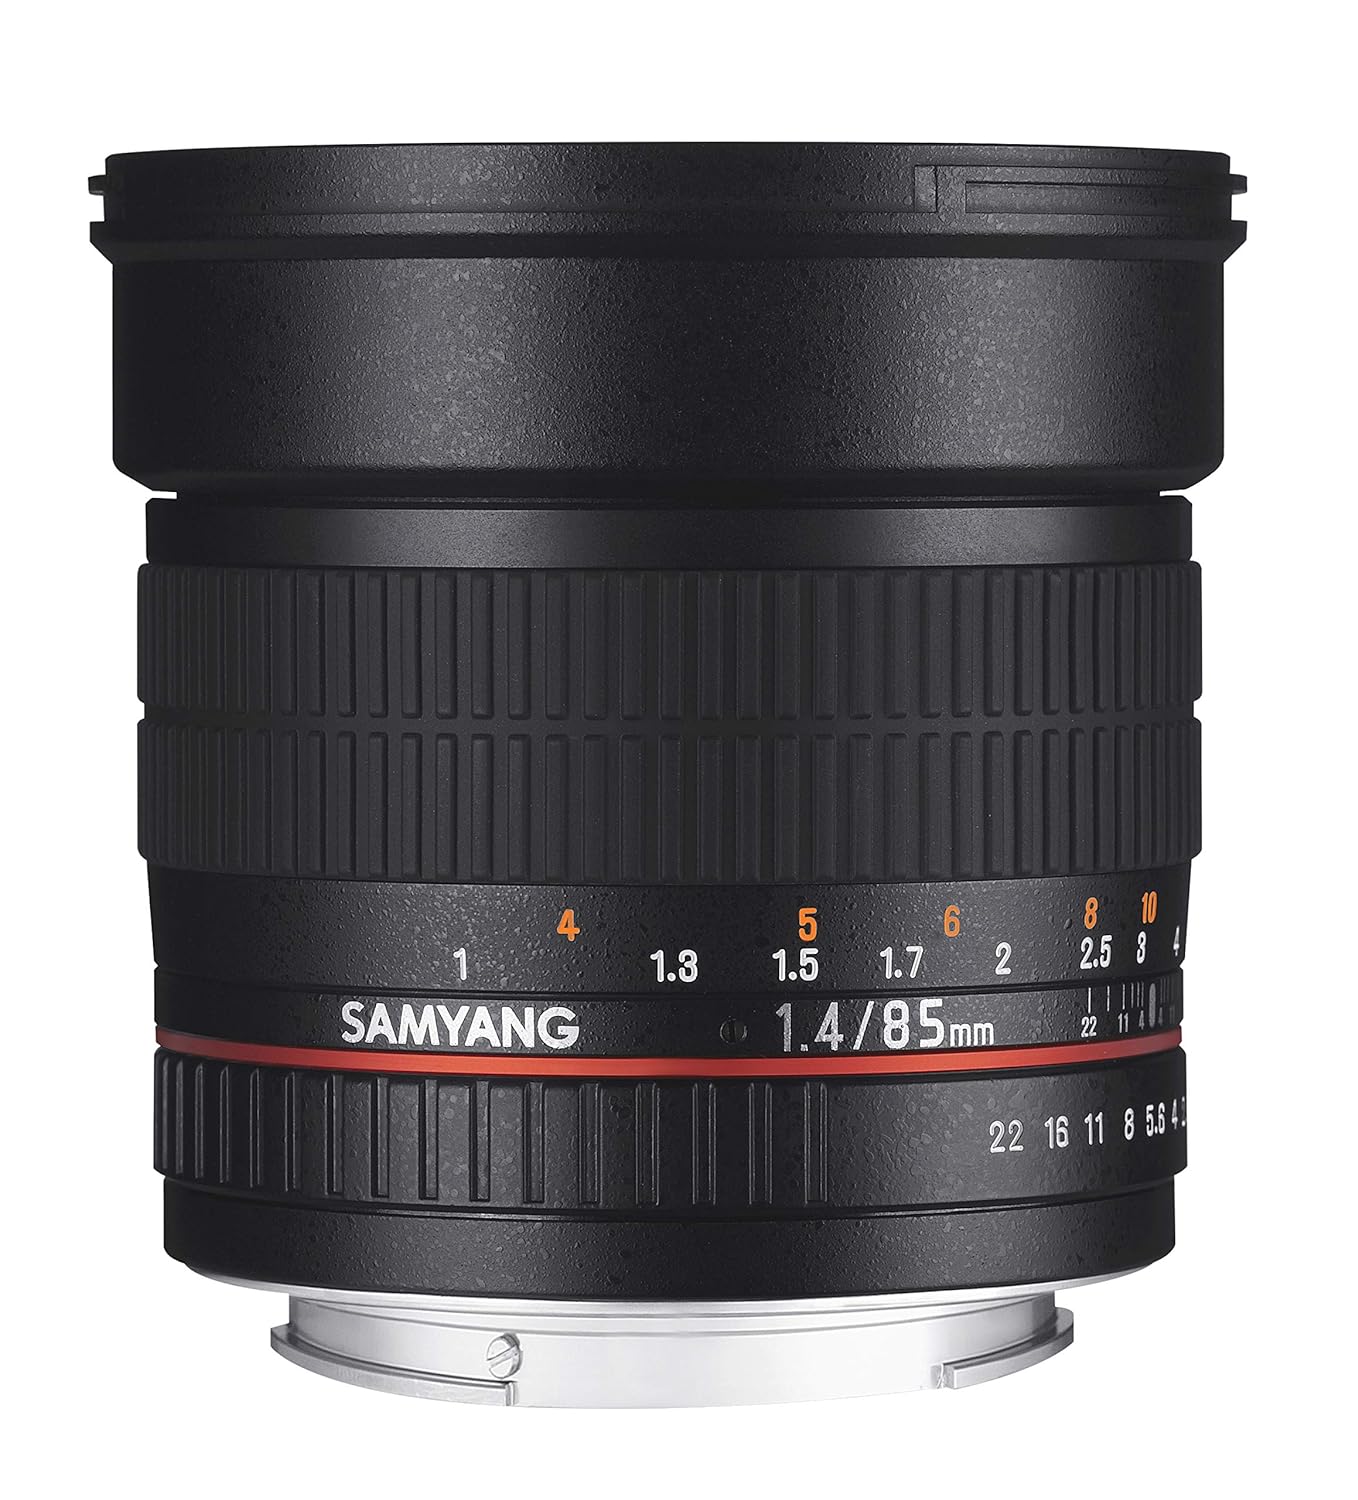 Samyang SY85MAE-N 85mm F/1.4 Prime Lens for Nikon AE (Black)